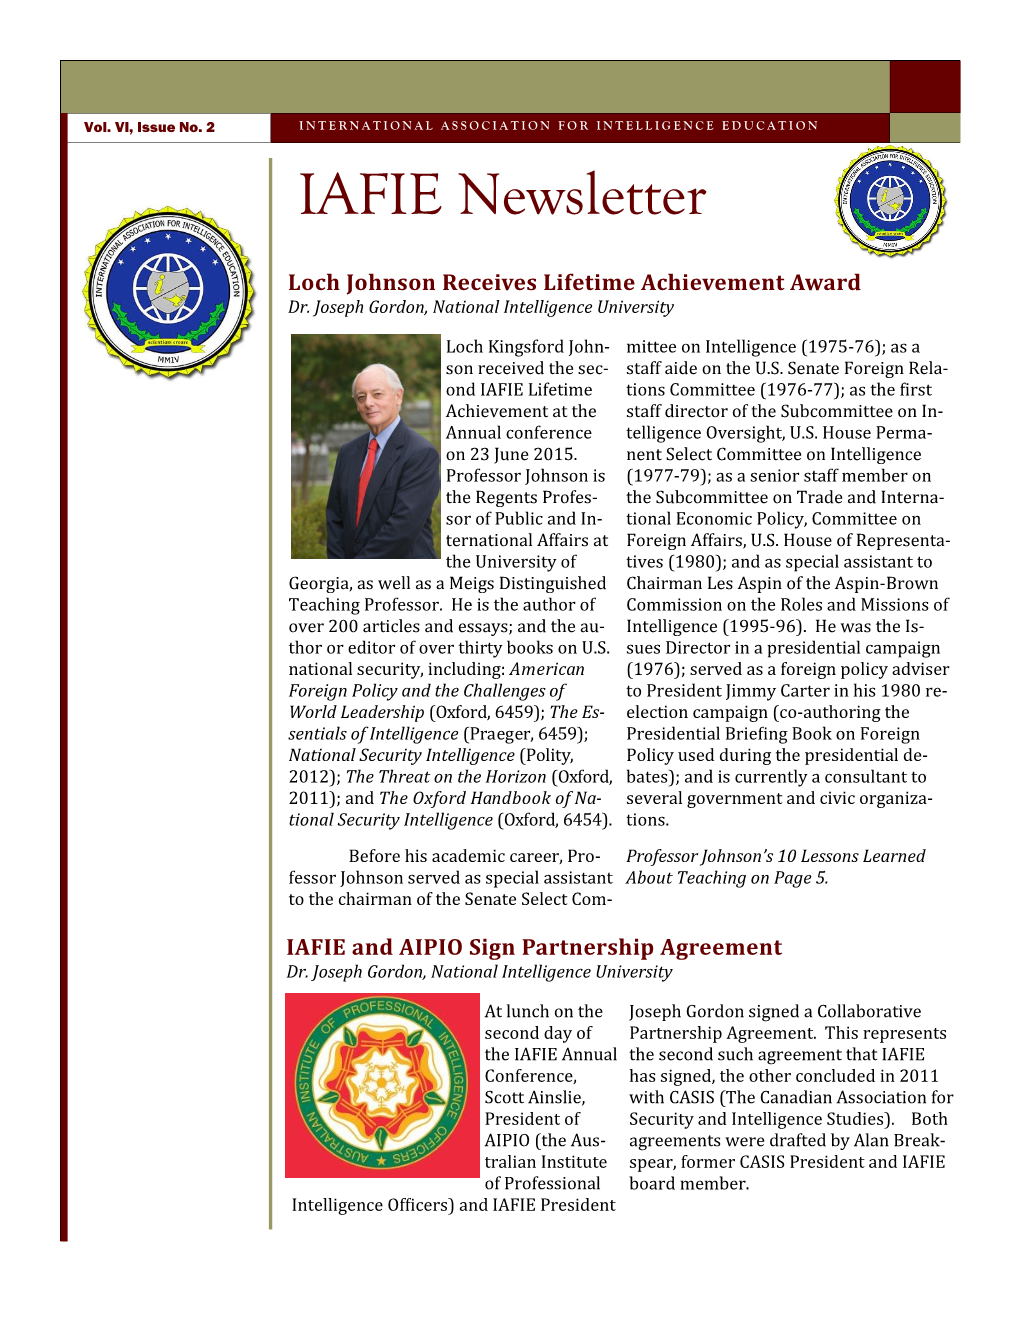 IAFIE Newsletter